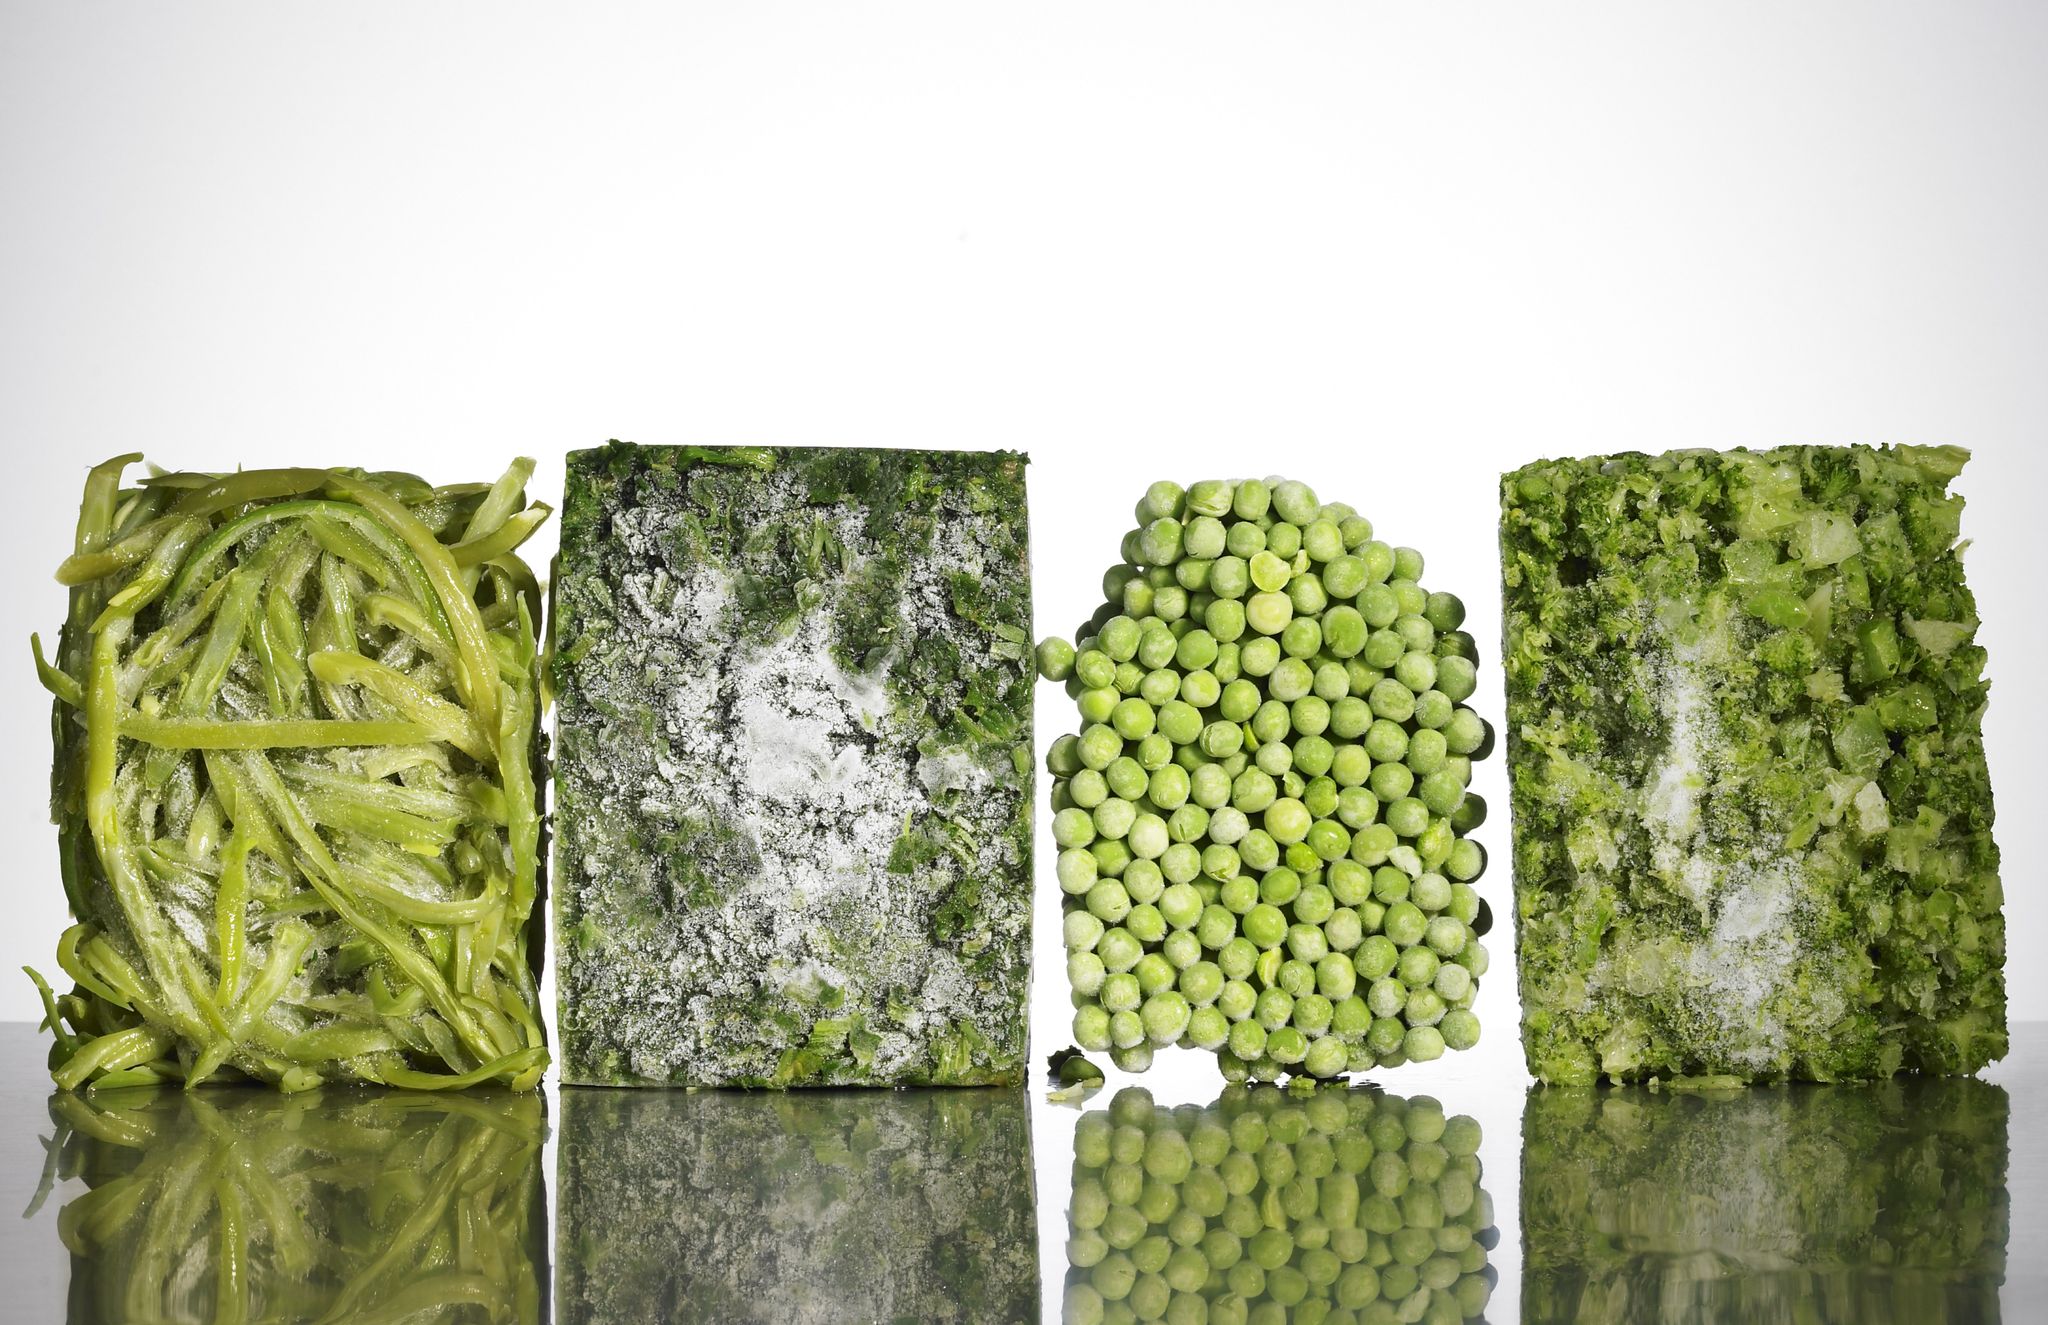 Blocks of frozen vegetables